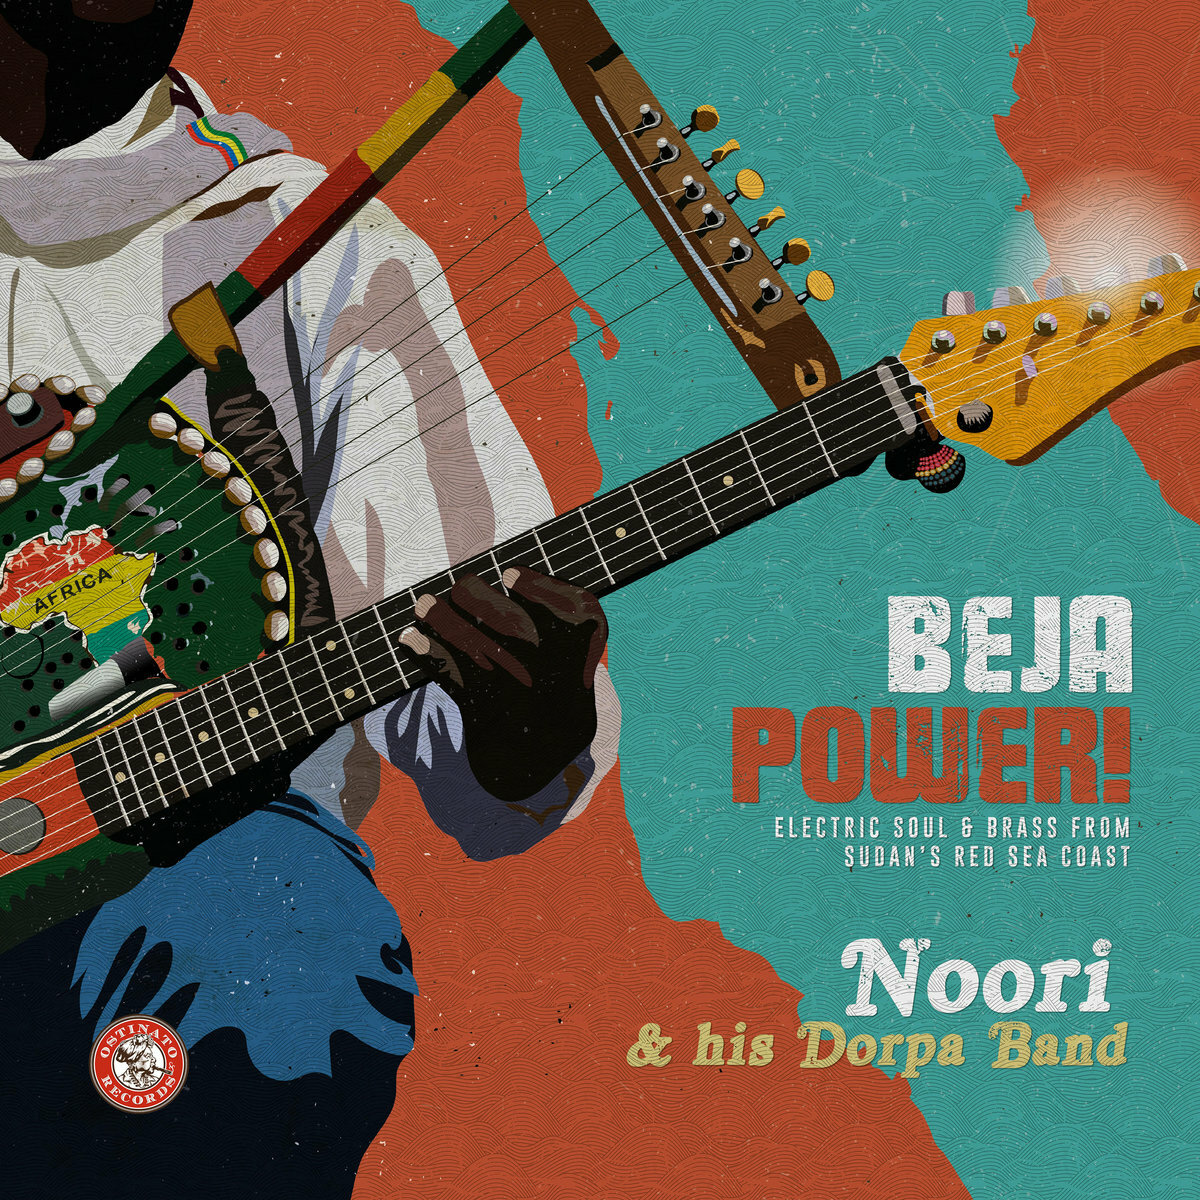 Noori and his Dorpa Band